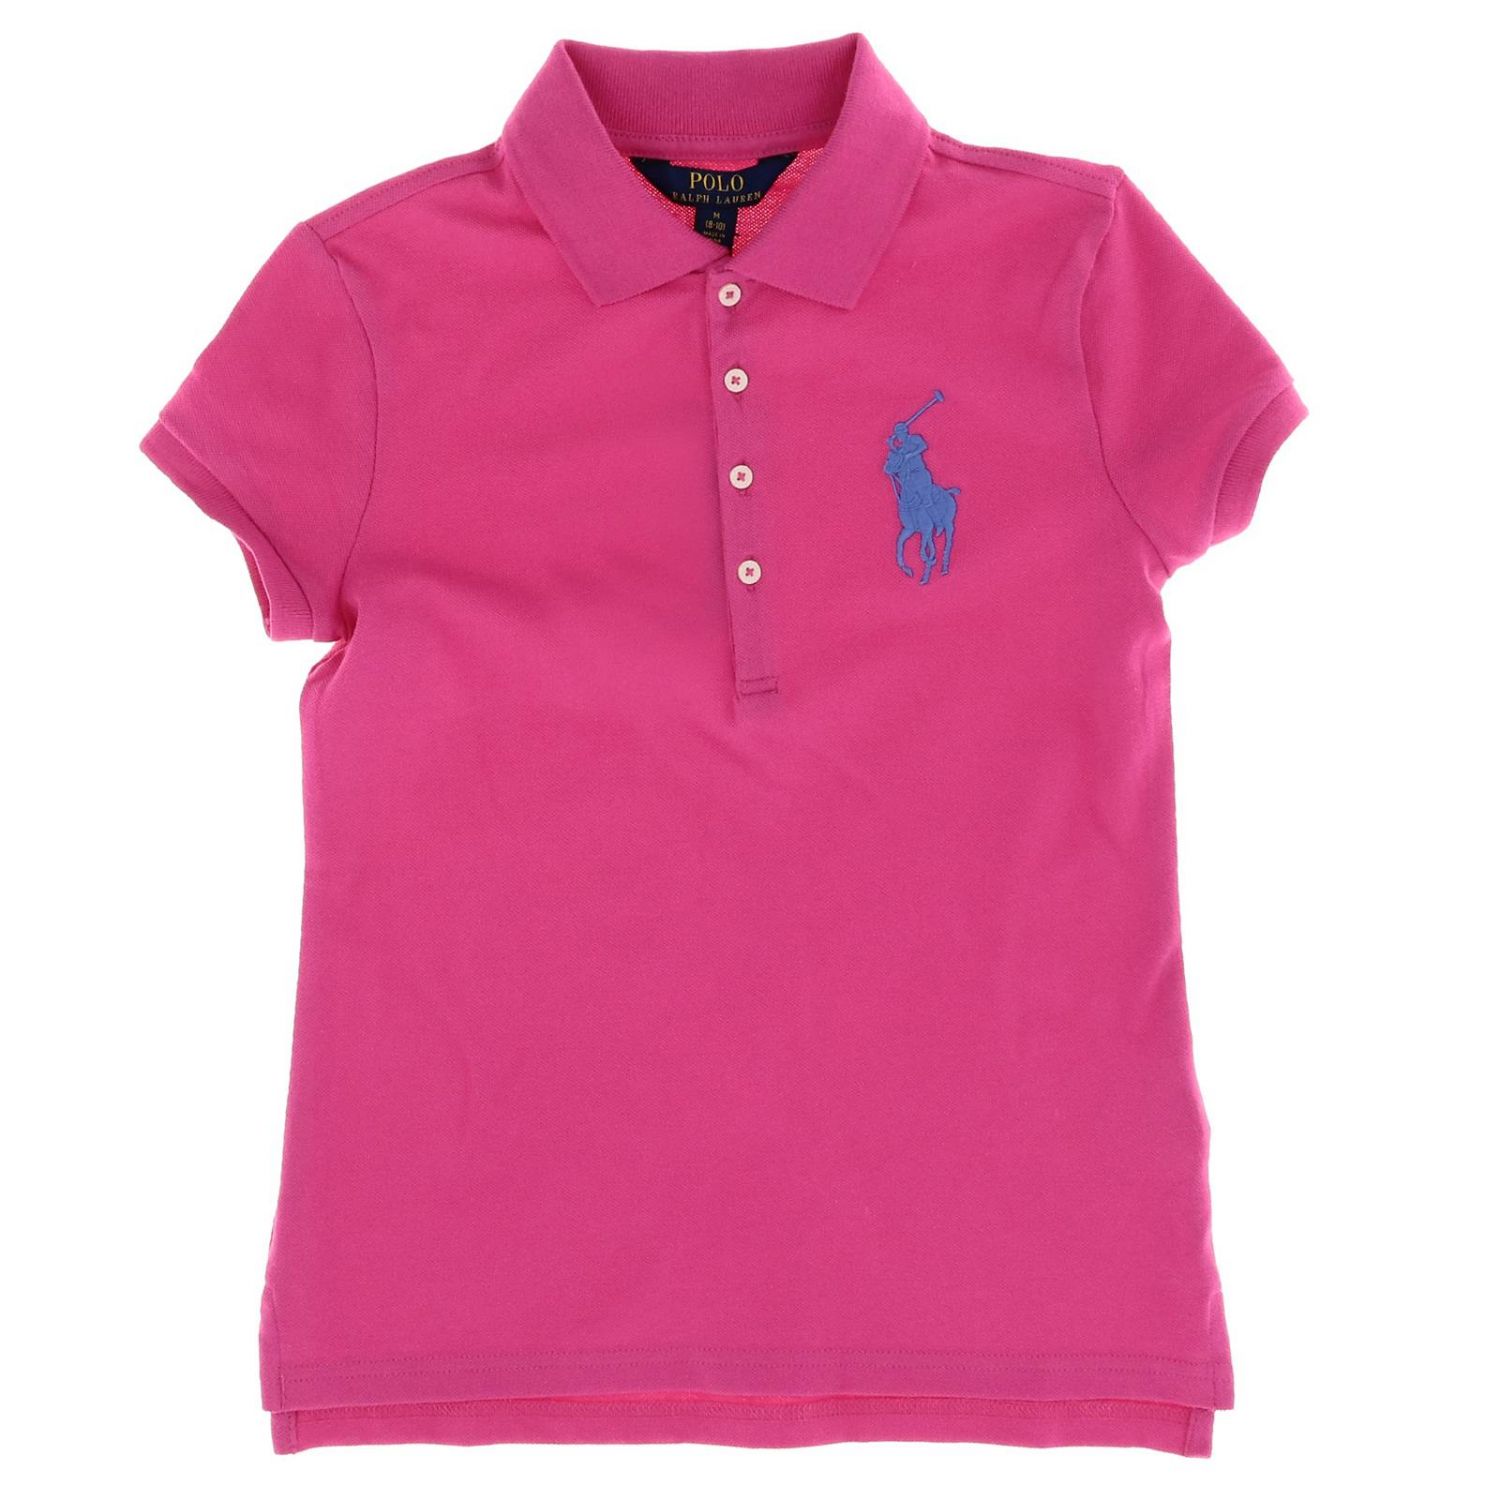 Polo Ralph Lauren Girl Outlet: T-shirt kids - Fuchsia | T-Shirt Polo ...